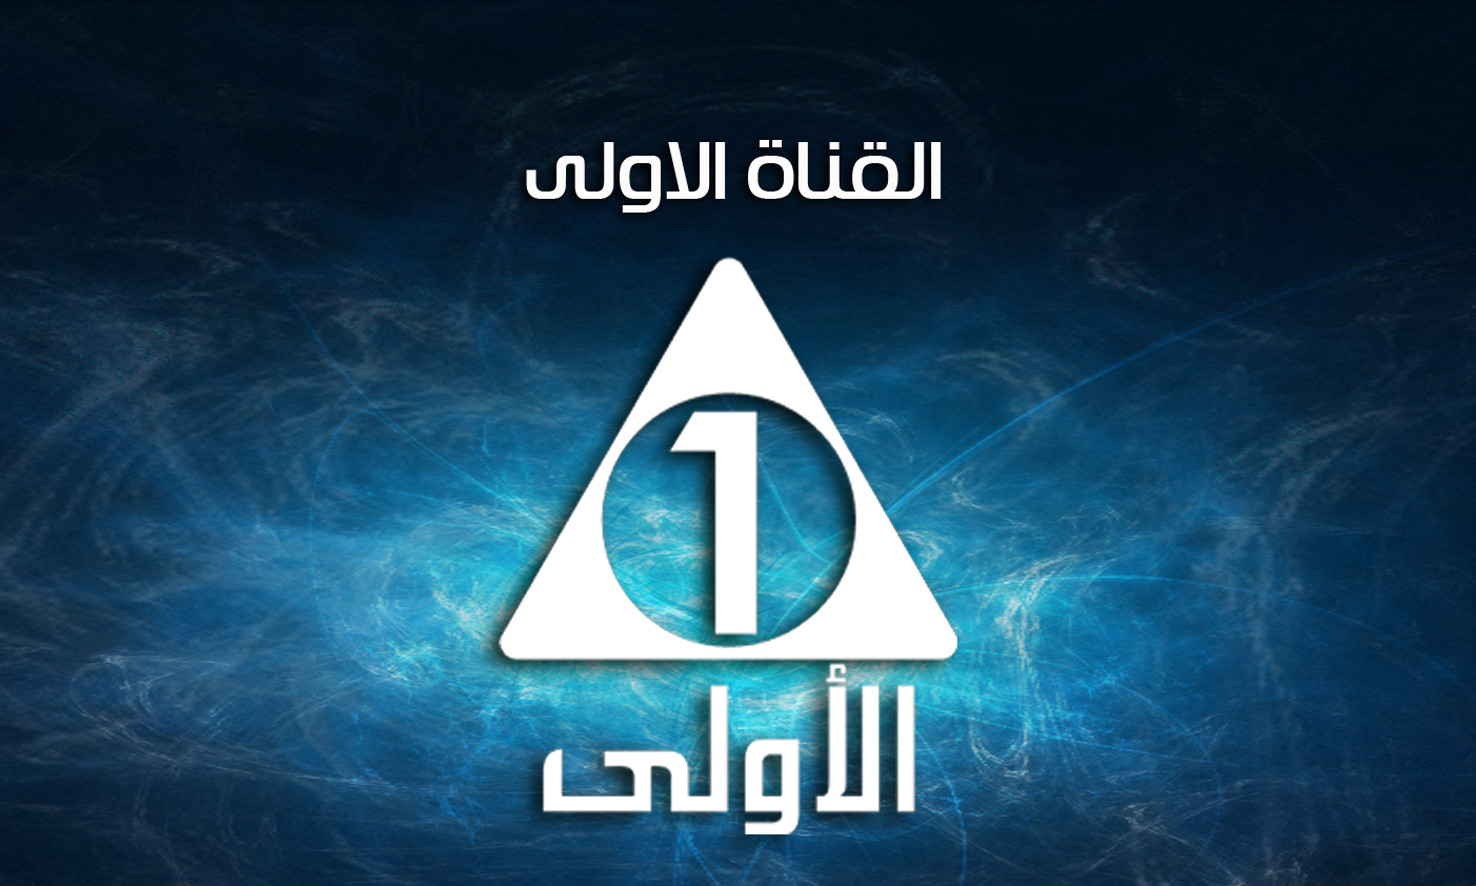 تردد القناة الأولى المصرية الجديد 2022 على الأقمار الصناعية